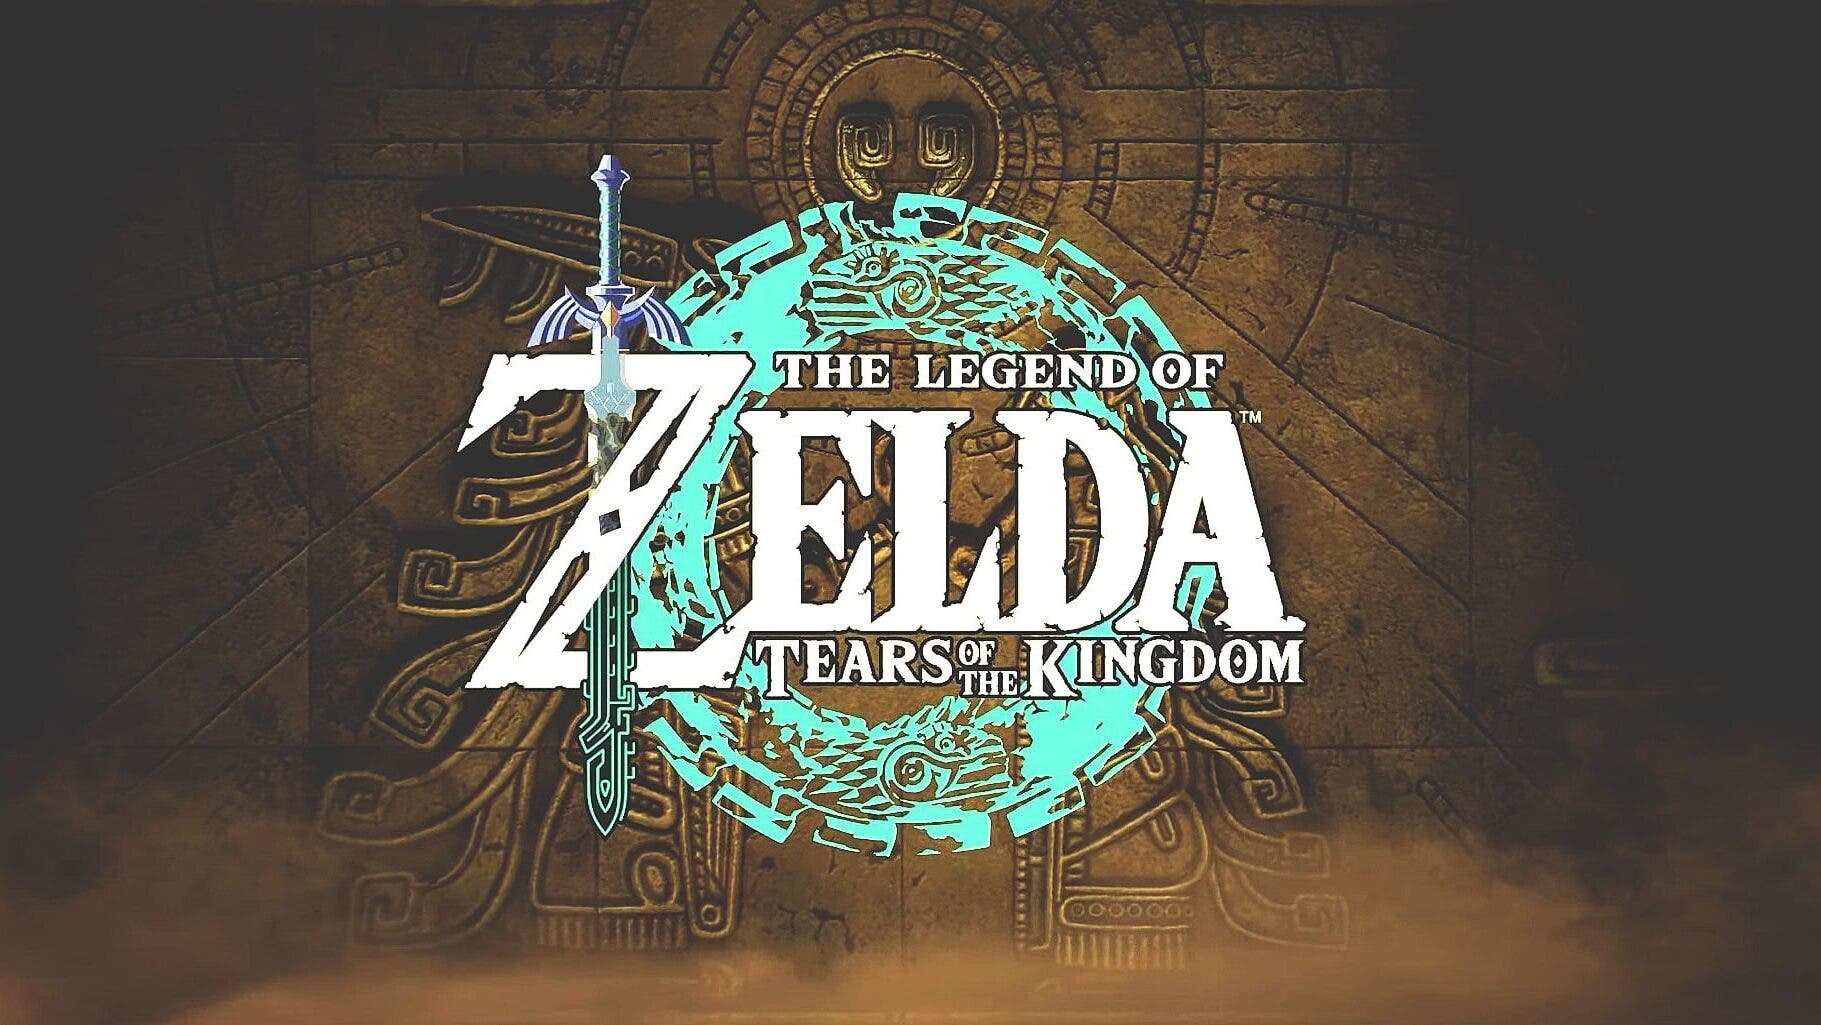 Guía The Legend of Zelda: Tears of the Kingdom Edición Coleccionista